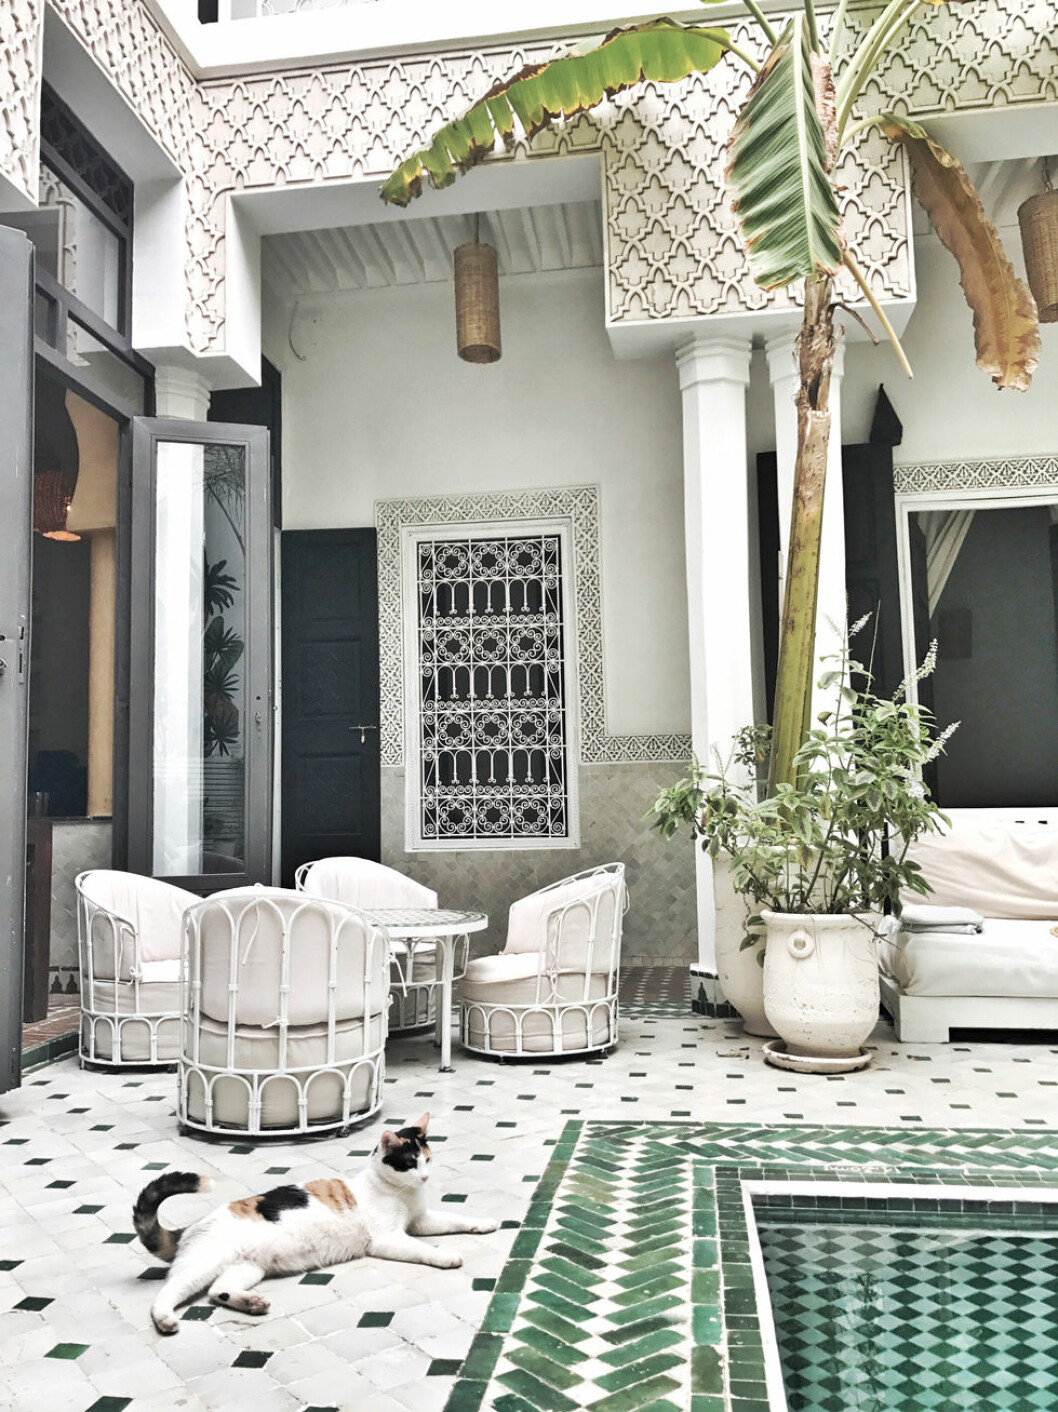 Le Riad Yasmine - ett marockanskt hus eller palats med en innergård som erbjuder avskildhet och svalka